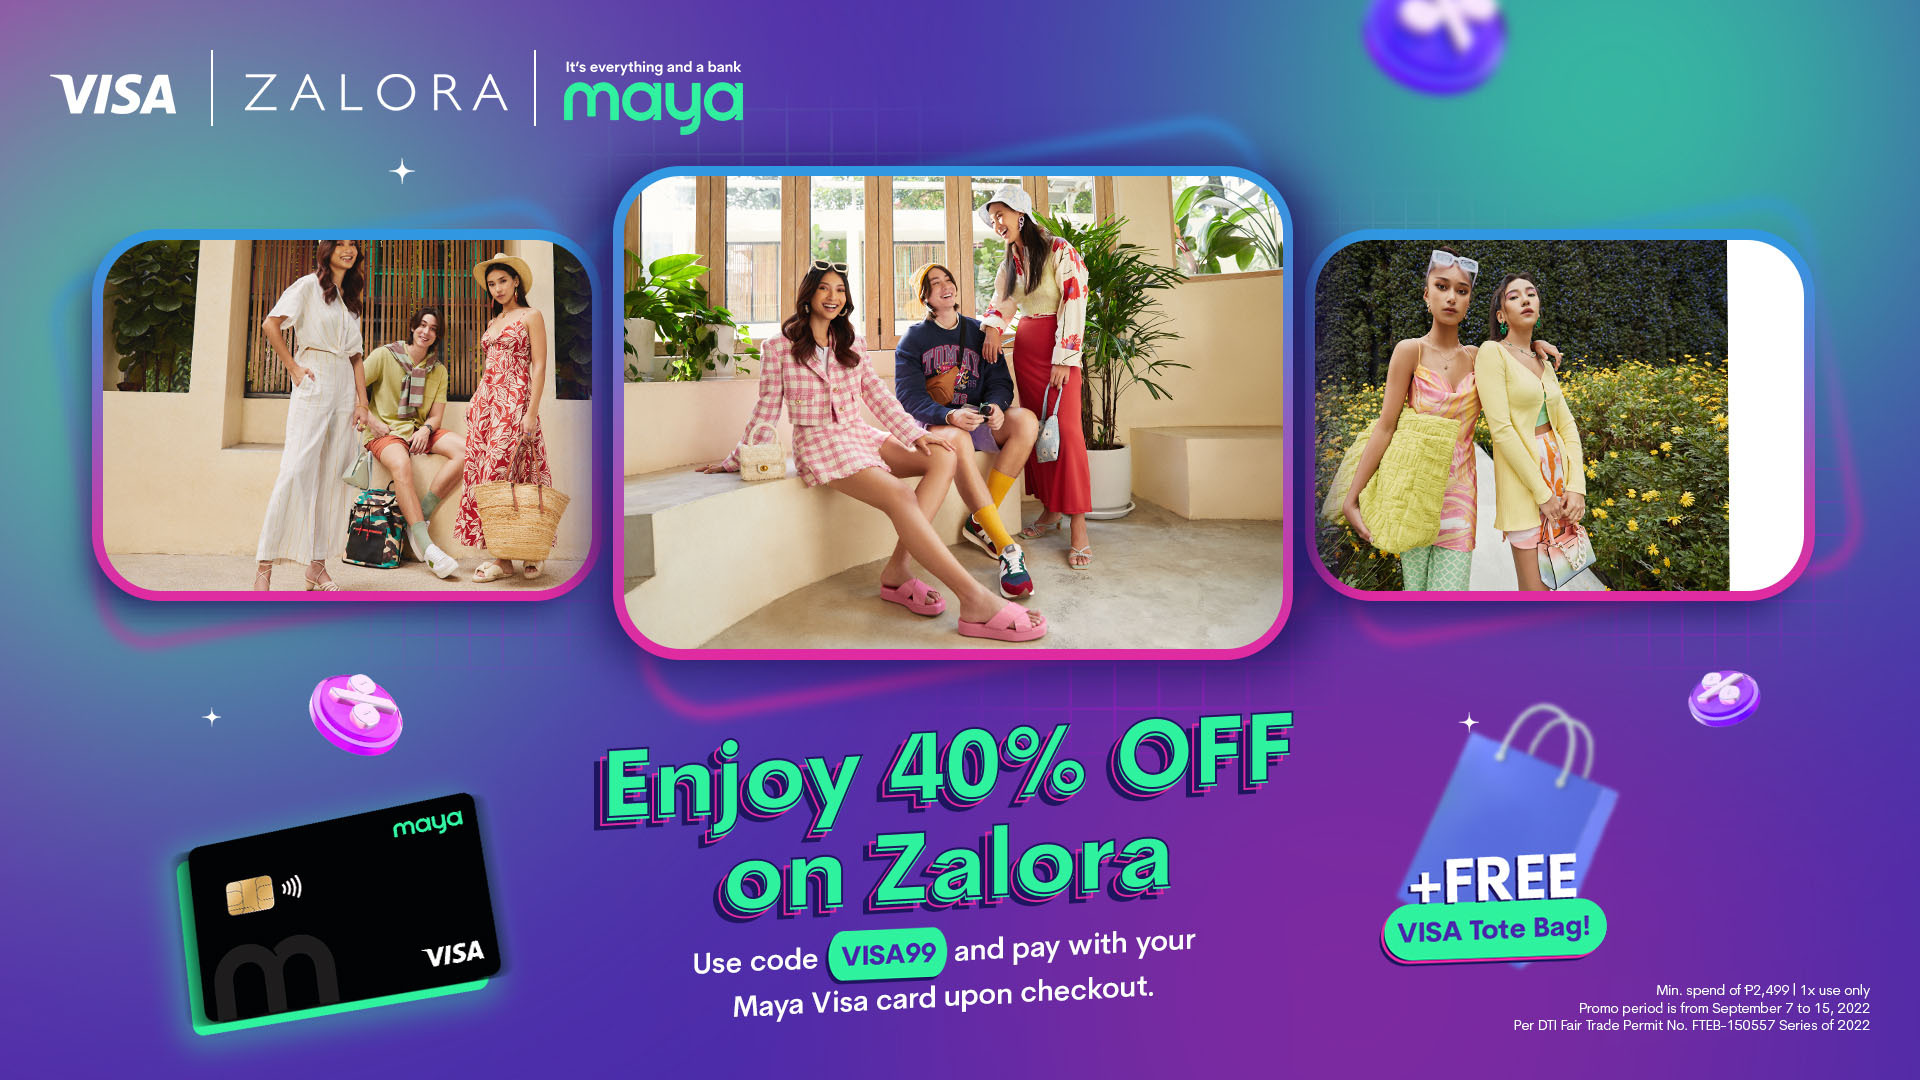 Get 40% OFF on Zalora and a FREE Visa Tote Bag using your Maya Visa card!